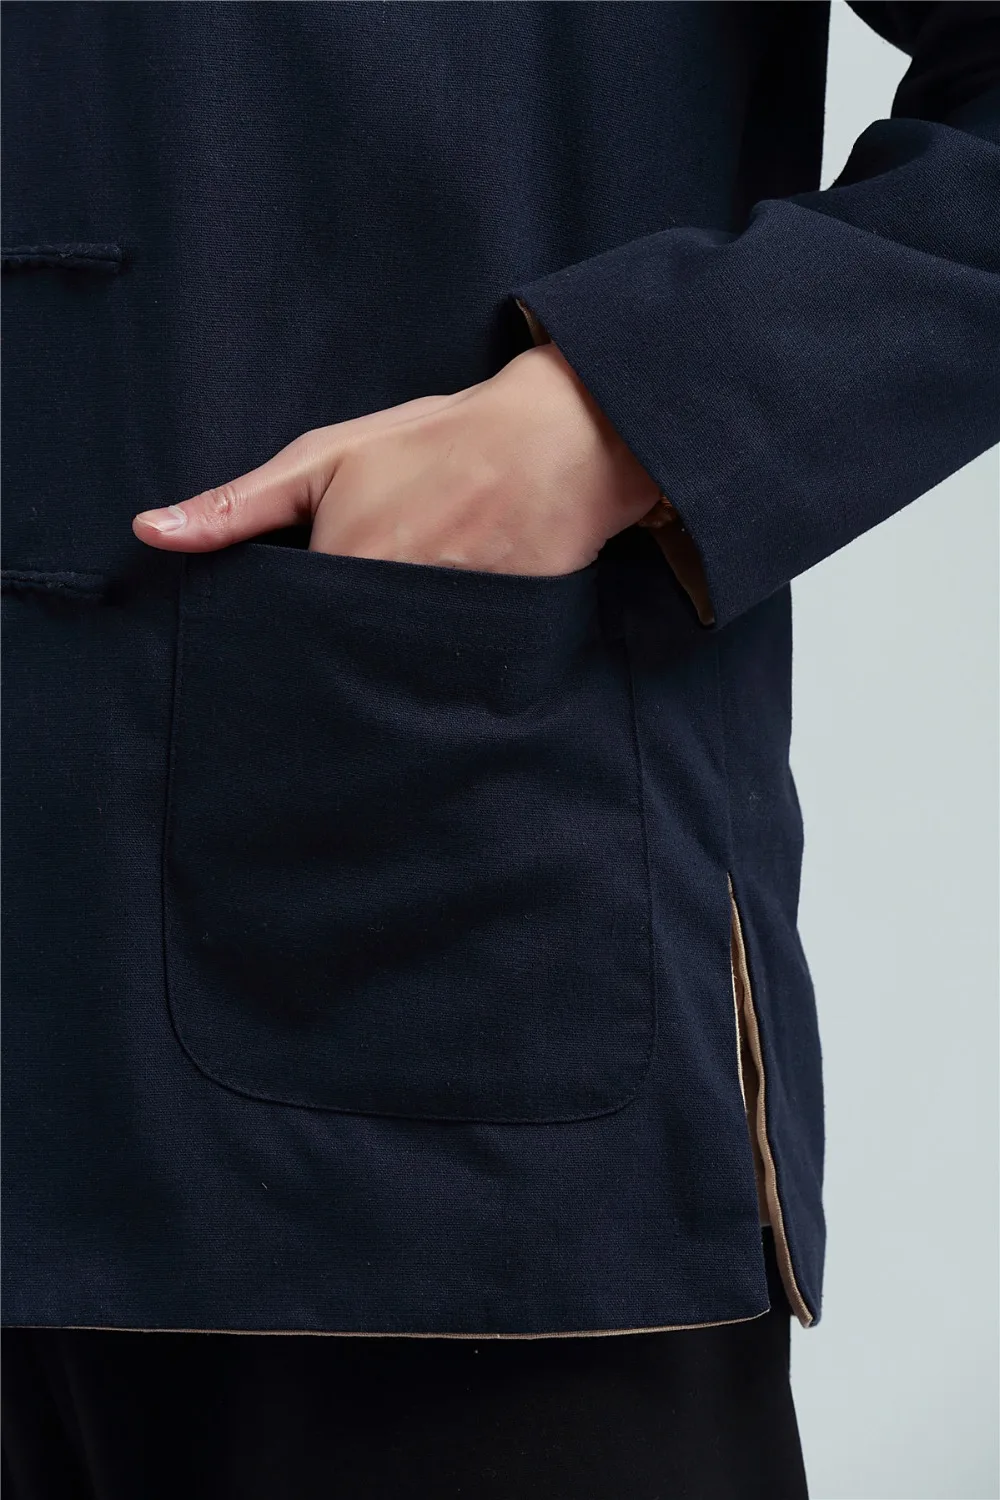 Шанхай история китайский топ revisiable Китайская традиционная одежда Двусторонняя одежда воротник-стойка белье китайский кунг-фу куртка